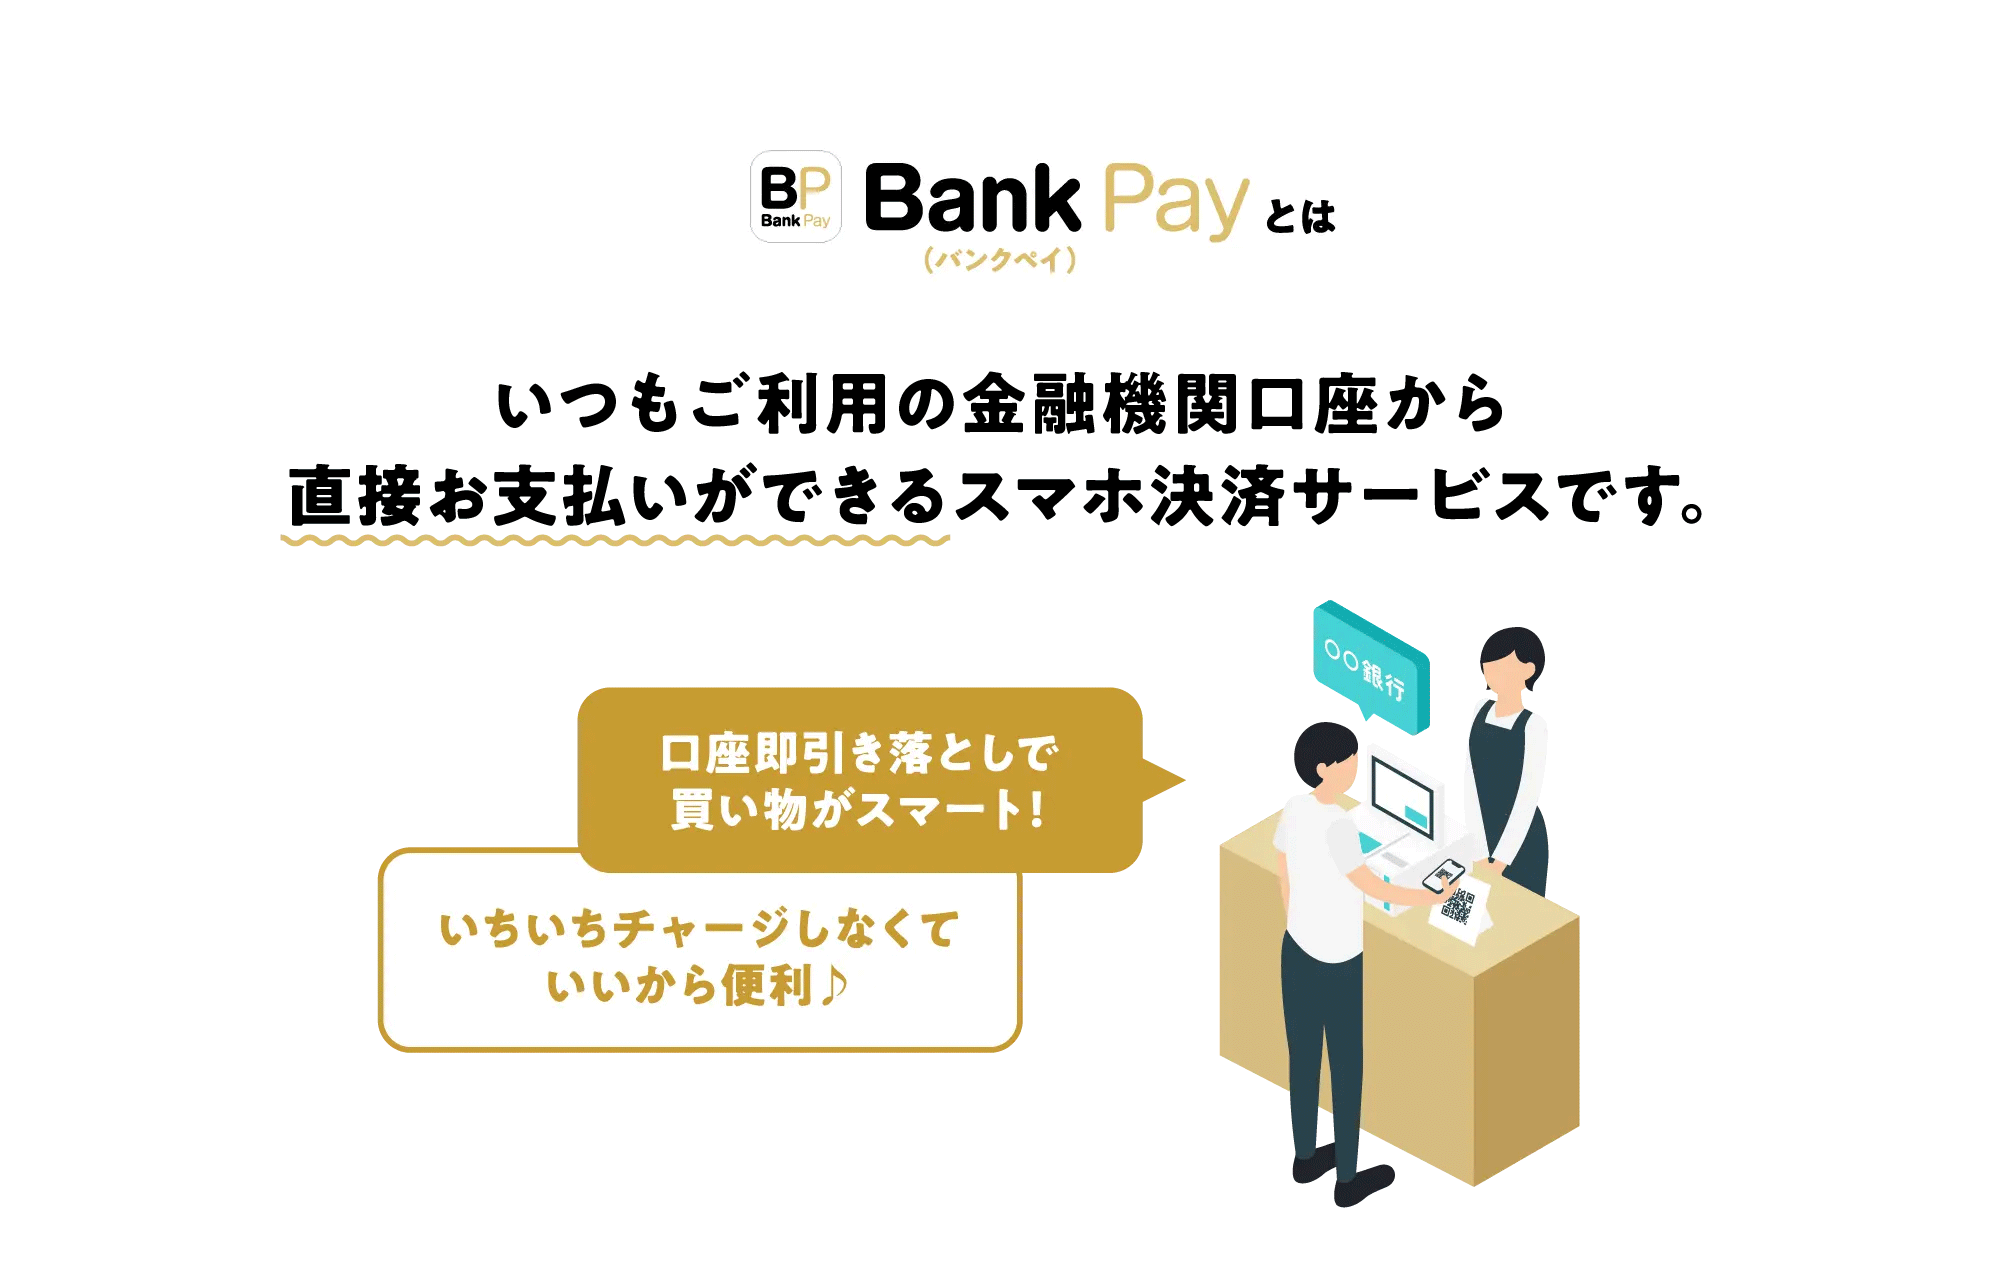 Bank Pay（バンクペイ）とは　いつもご利用の金融機関口座から直接お支払いができるスマホ決済サービスです。